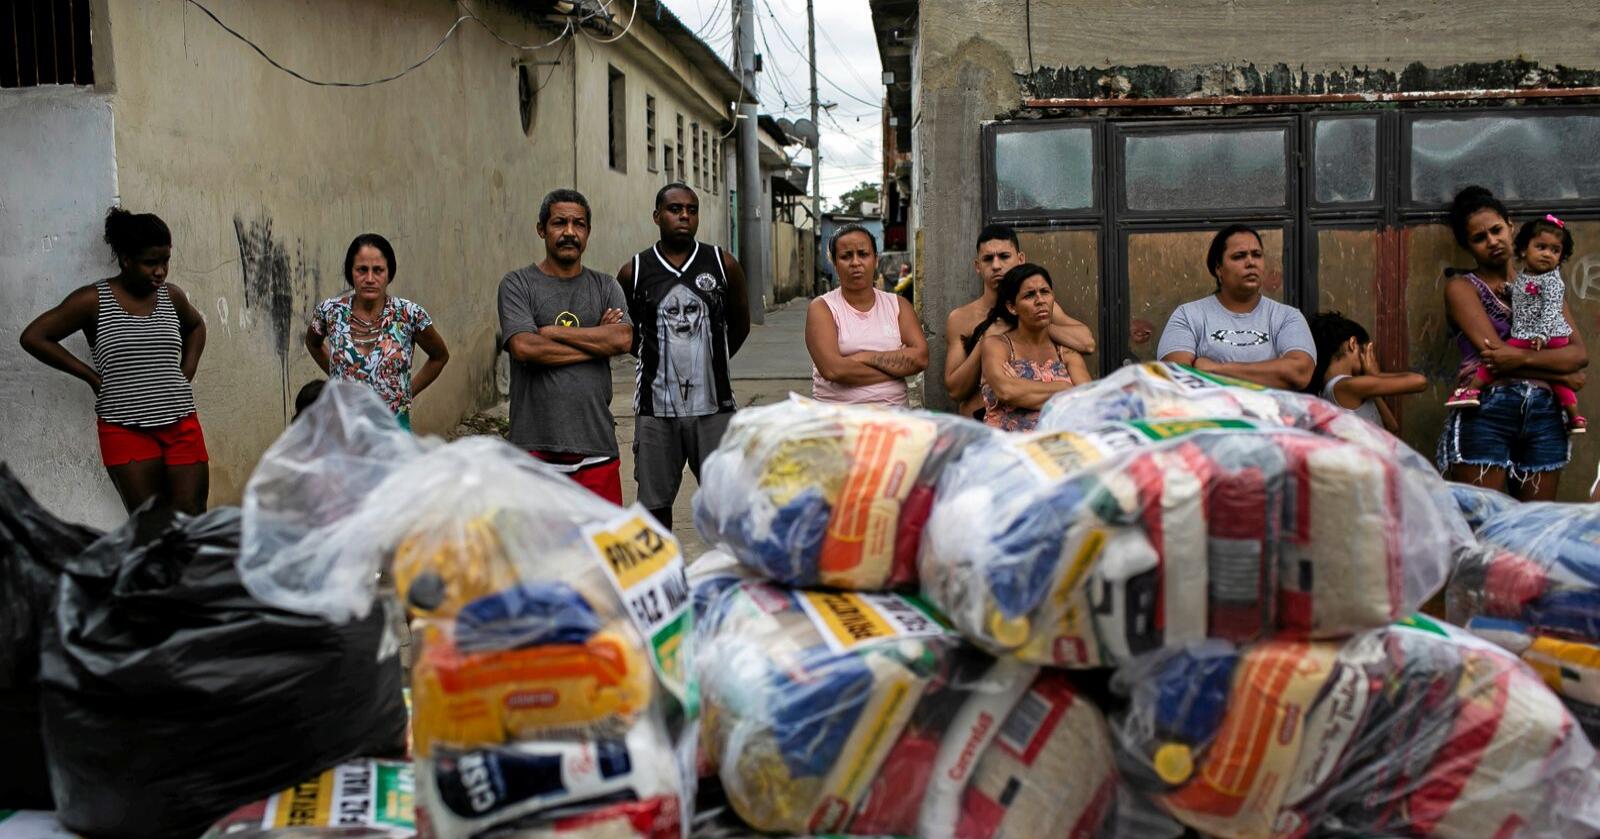 Innnbyggere i Vila Vintem i Rio de Janeiro i Brasil venter på å få utdelt mat. Koronaepidemien har ført til nedstenging, arbeidsledighet og mangel på penger til å kjøpe mat. Foto: Bruna Prado / AP / NTB